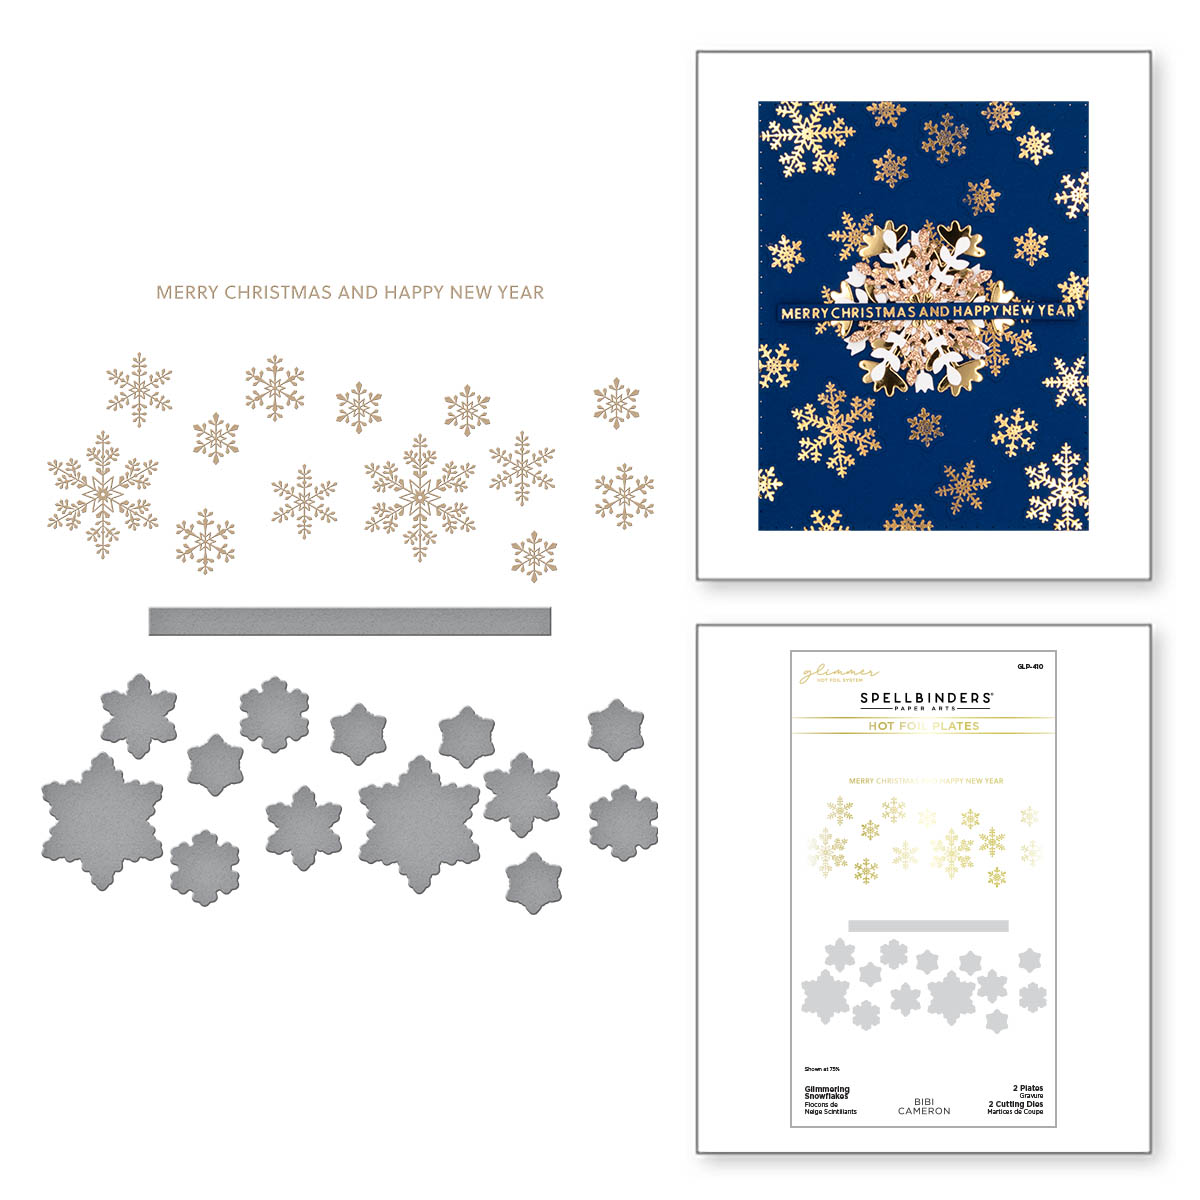 Spellbinders Foil Plate Glimmering Snowflakes